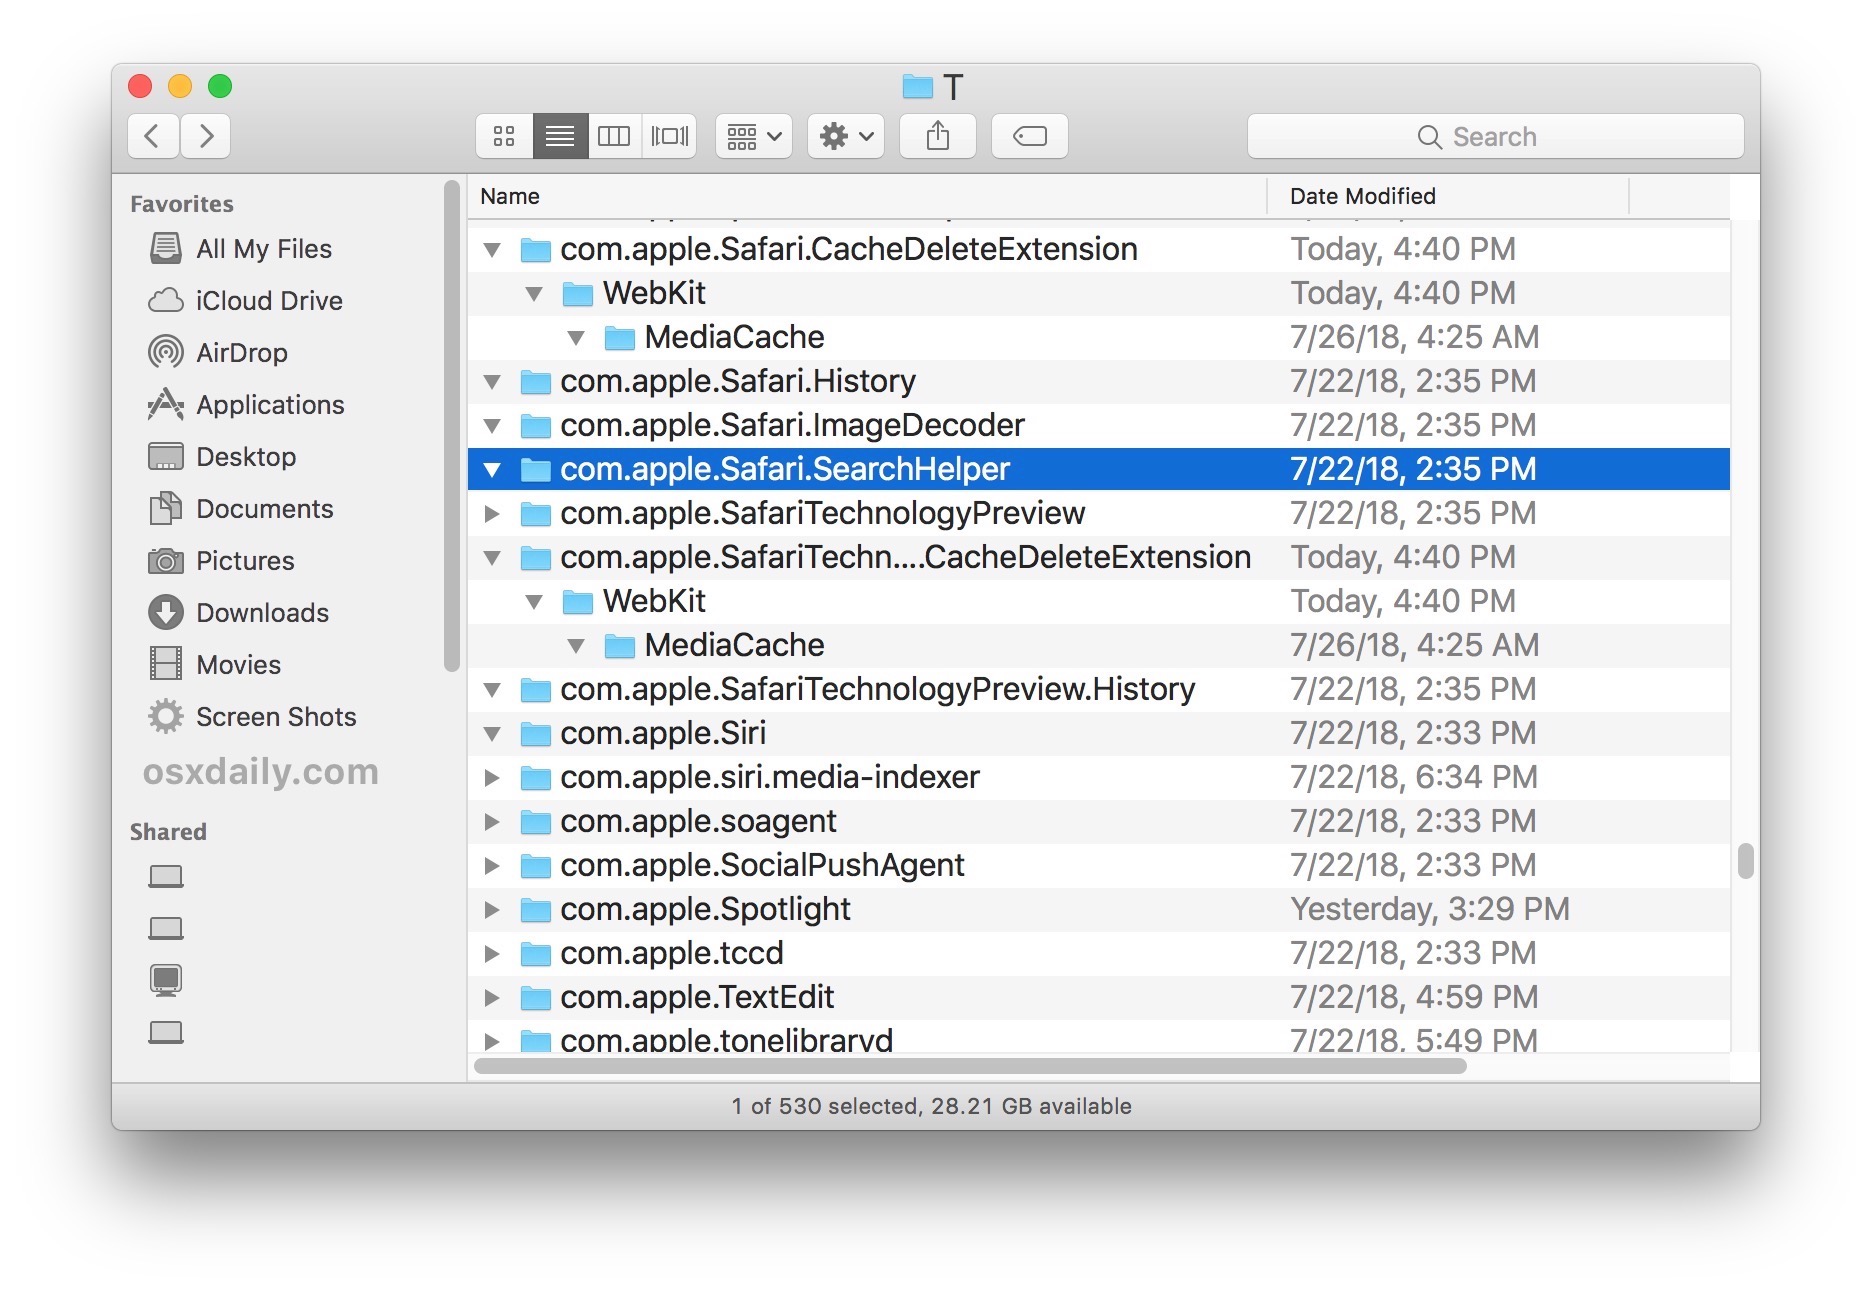 for mac download Actual File Folders 1.15